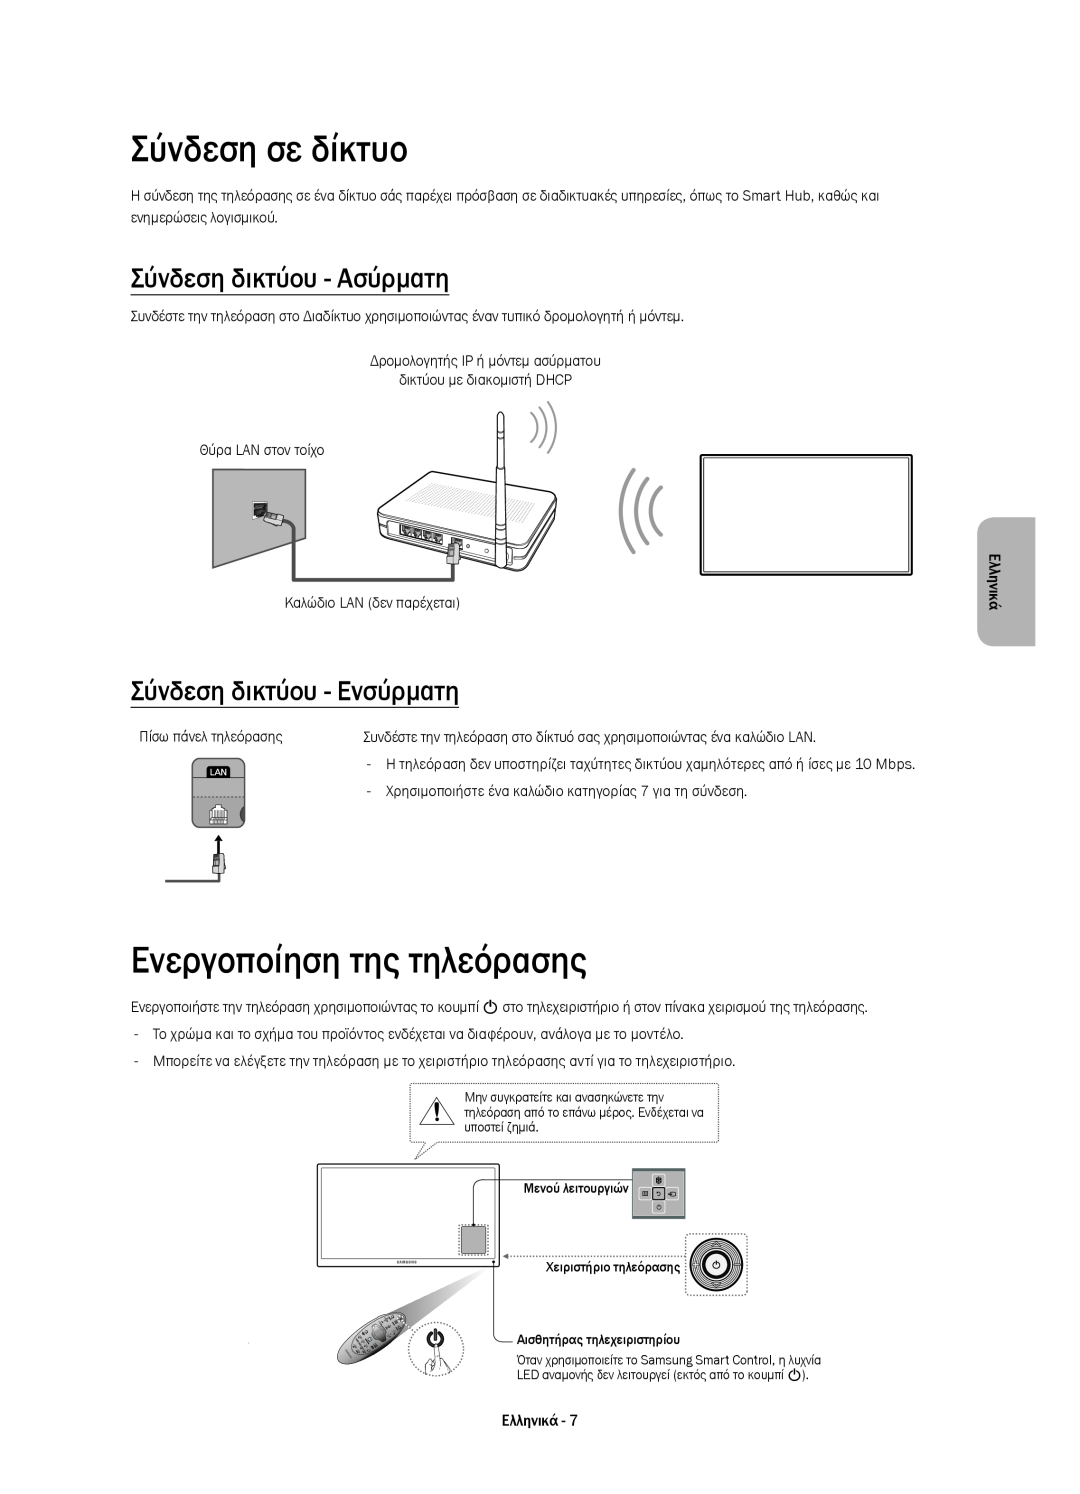 Samsung UE48H6410SUXXH, UE55H6410SSXXH manual Σύνδεση σε δίκτυο, Ενεργοποίηση της τηλεόρασης, Σύνδεση δικτύου - Ασύρματη 